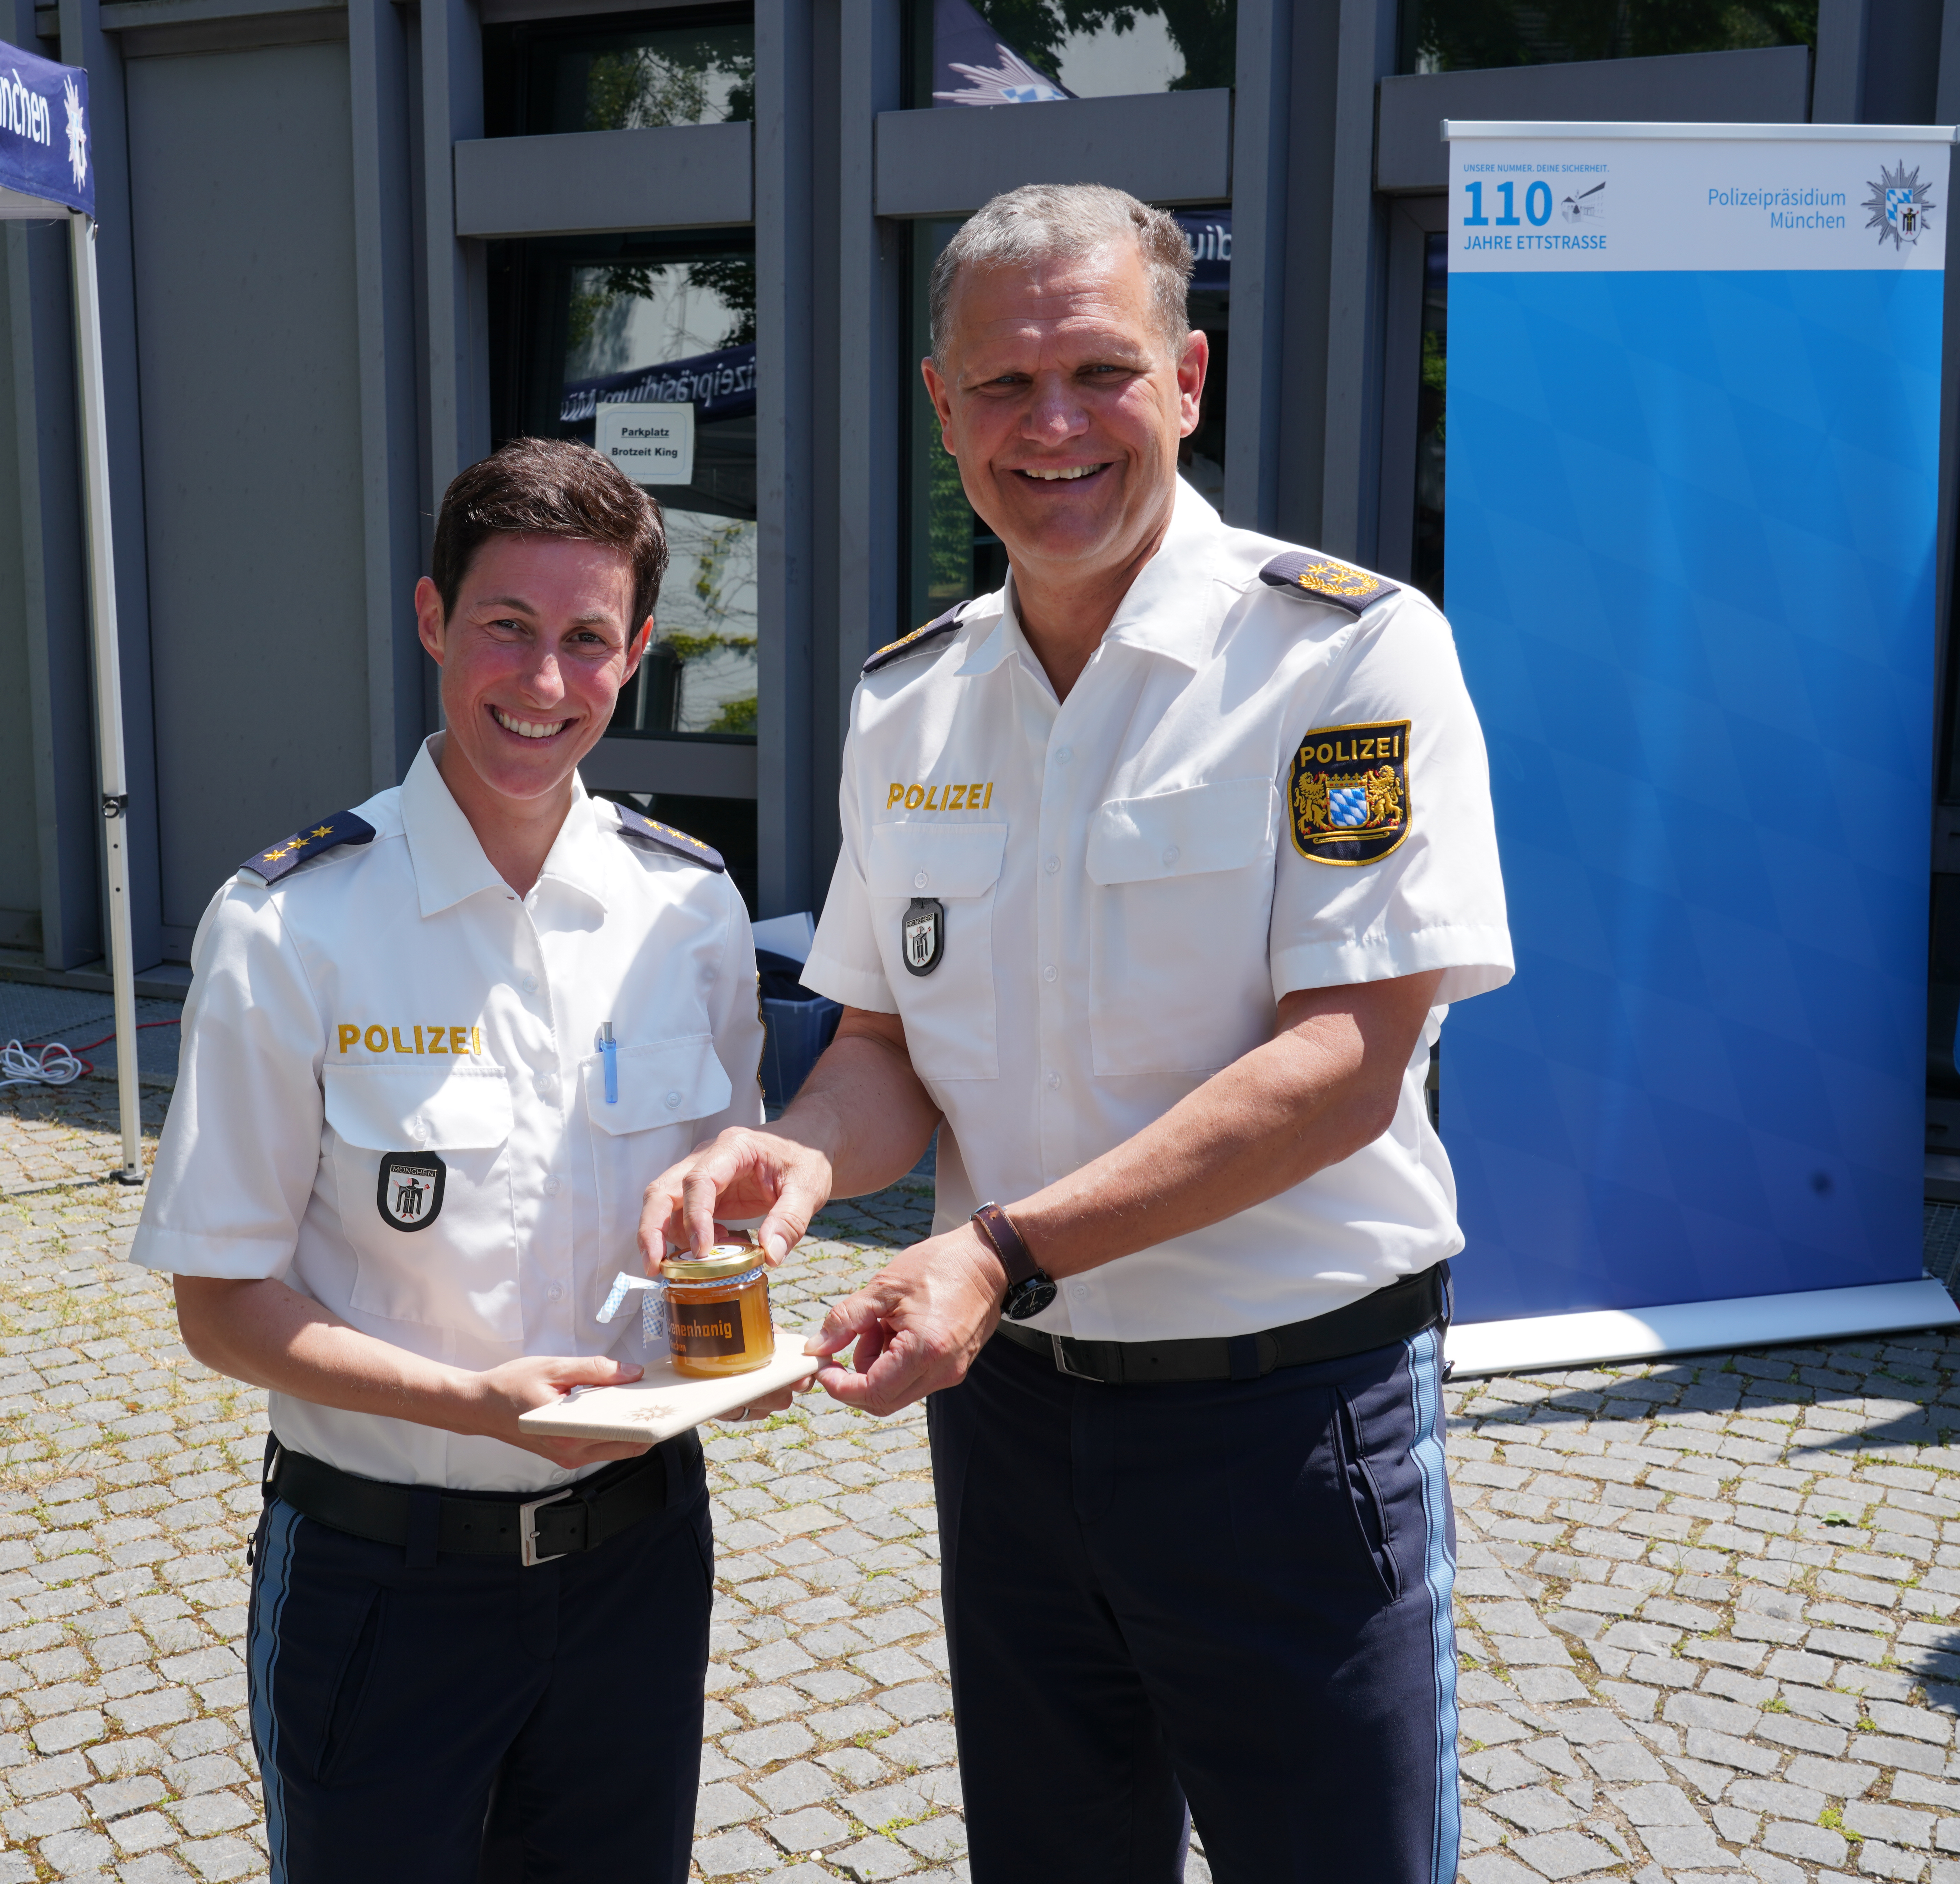 Polizei mit Blaulicht im Einsatz in München am 19.5.2019. (Photo